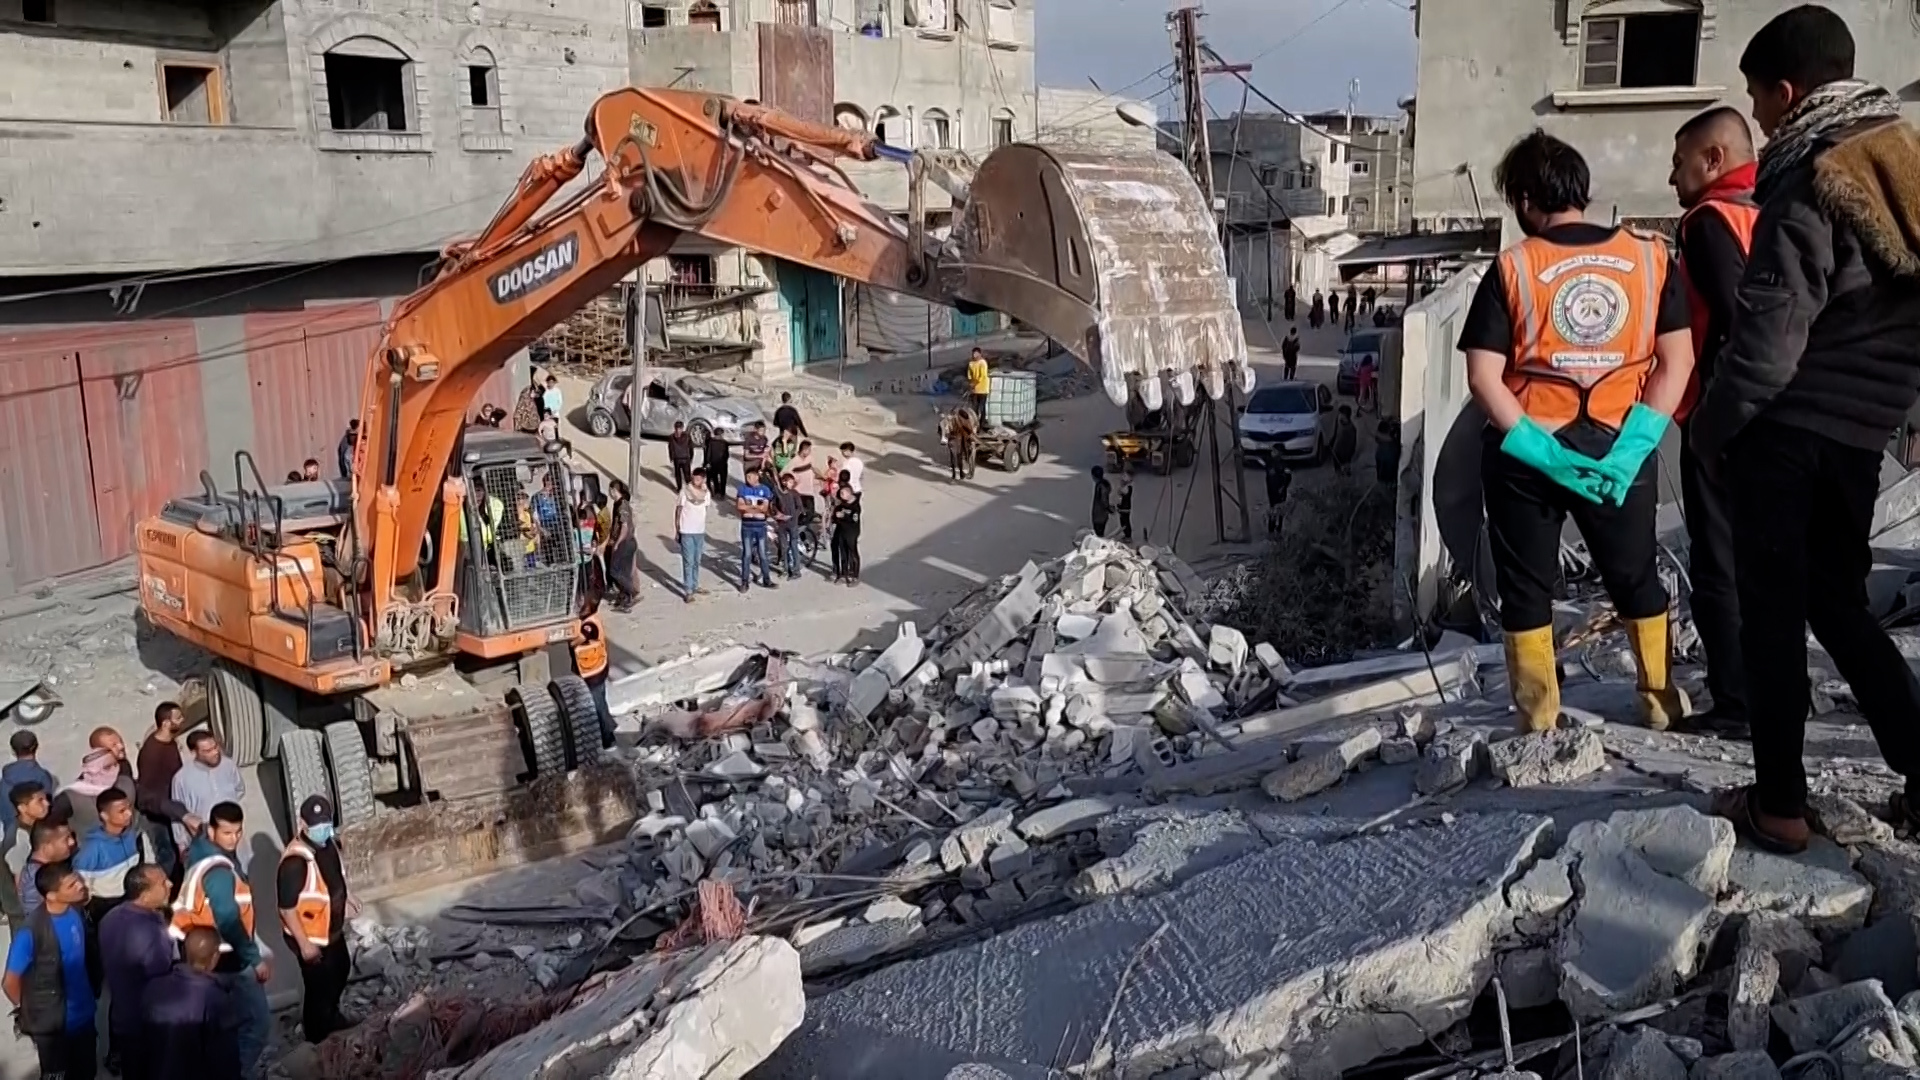 غارات ليلية كثيفة على وسط قطاع غزة واستمرار انتشال جثامين مجمع ناصر | أخبار – البوكس نيوز